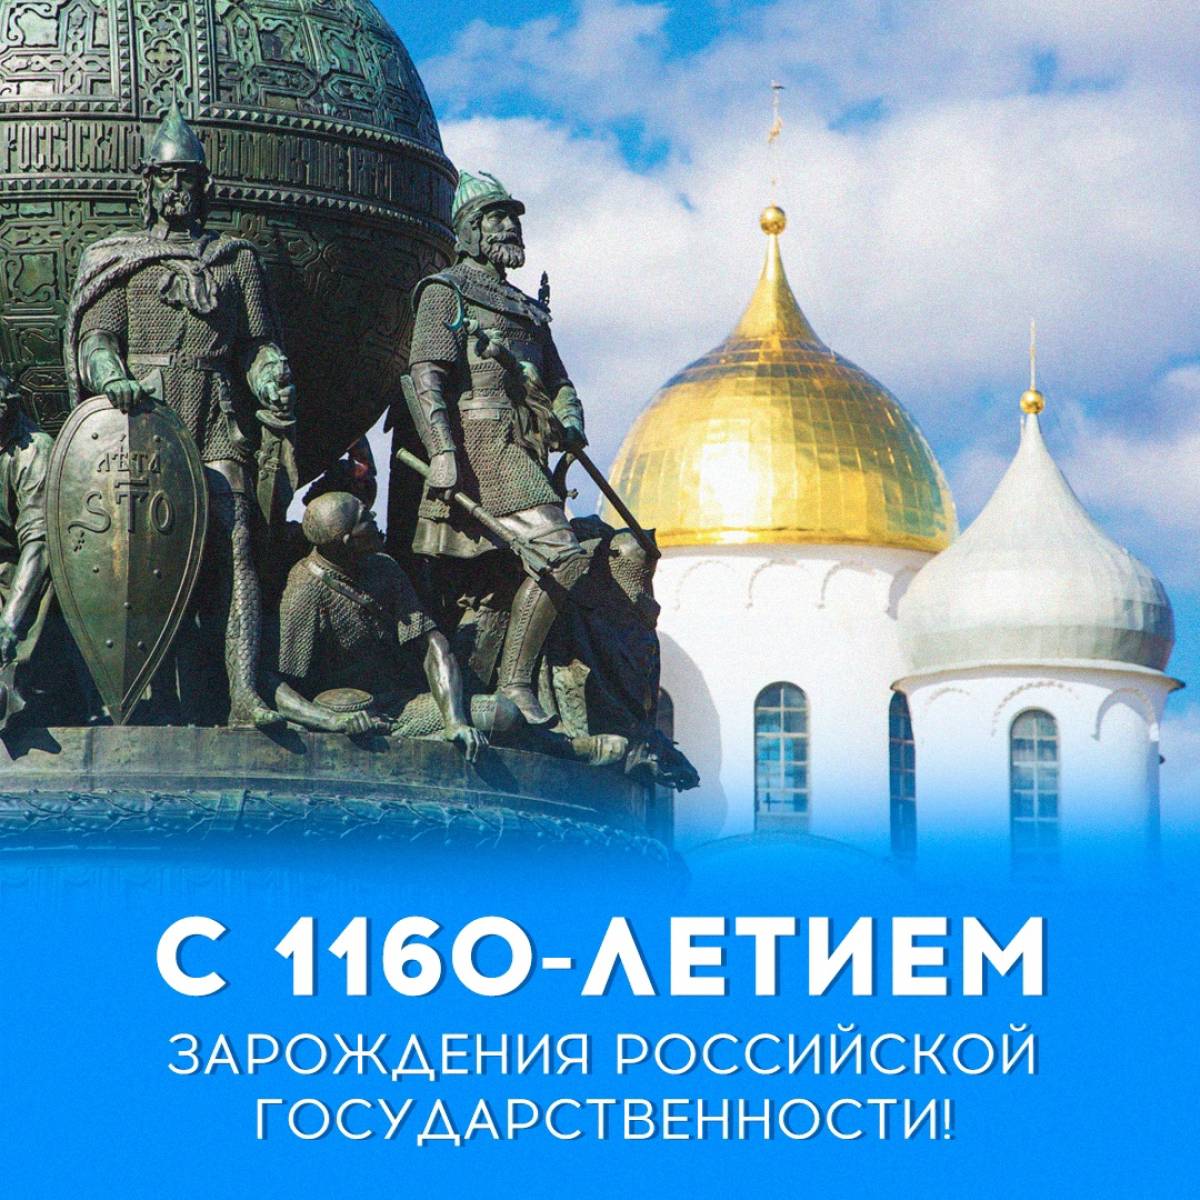 Андрей Никитин напомнил, что новгородцы всегда славились своим мужеством, вставали на защиту русских рубежей от любого врага